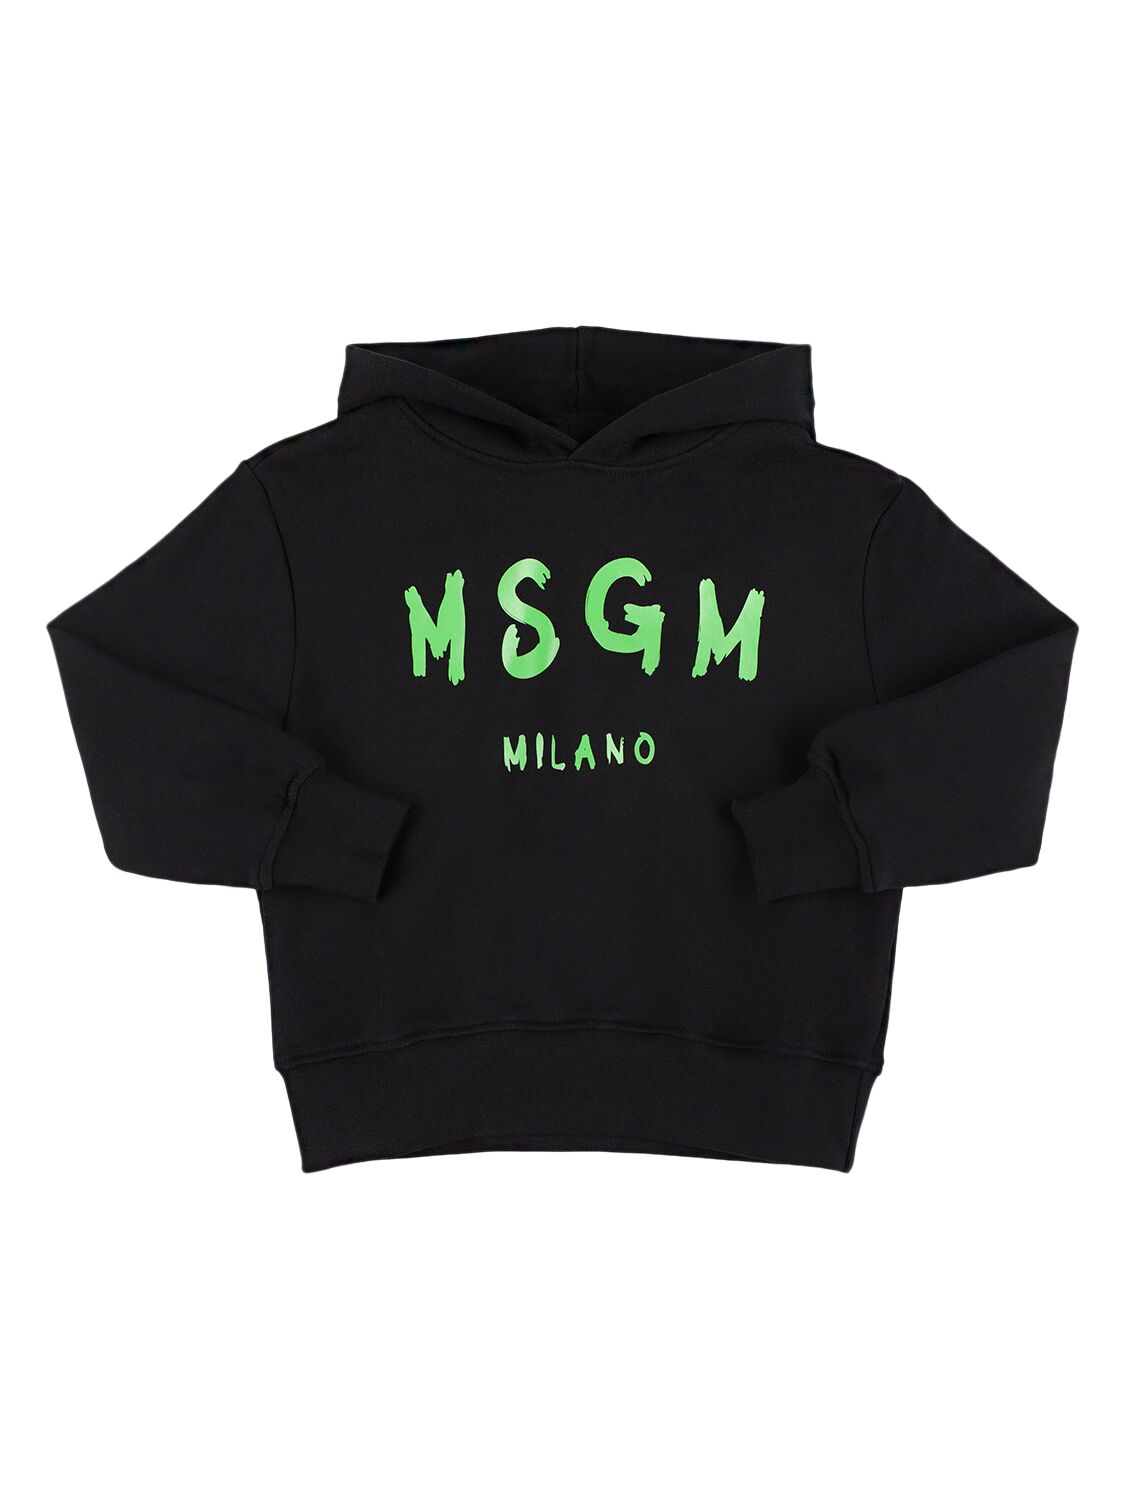 Msgm Kids' Printed Logo Hooded Sweatshirt In Black